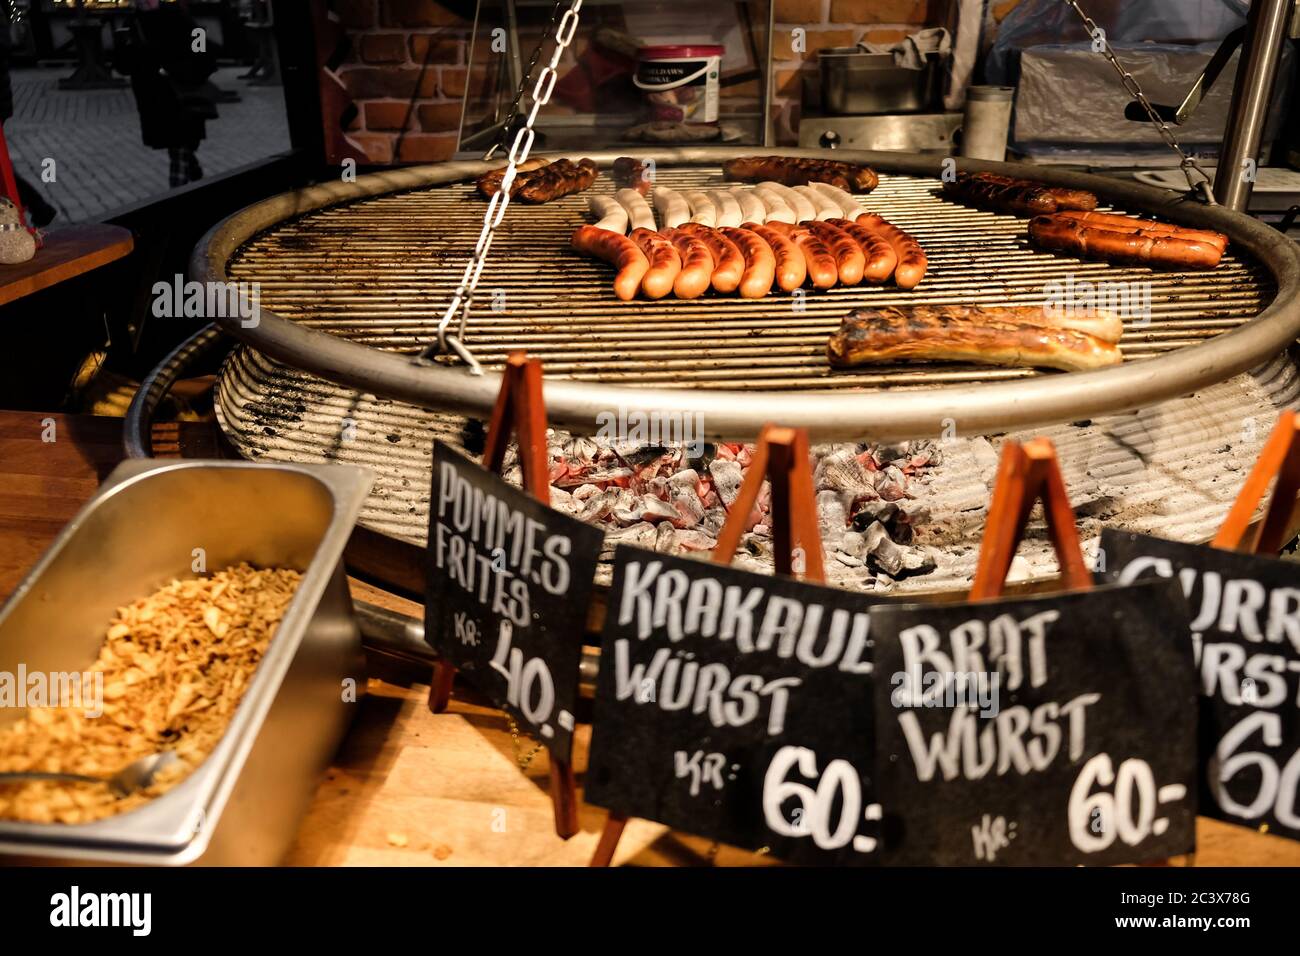 Kopenhagen / Dänemark - November 2019: Street Food auf dem skandinavischen Weihnachtsmarkt. Verschiedene auf einem Bratwurst Grill Stockfotografie - Alamy